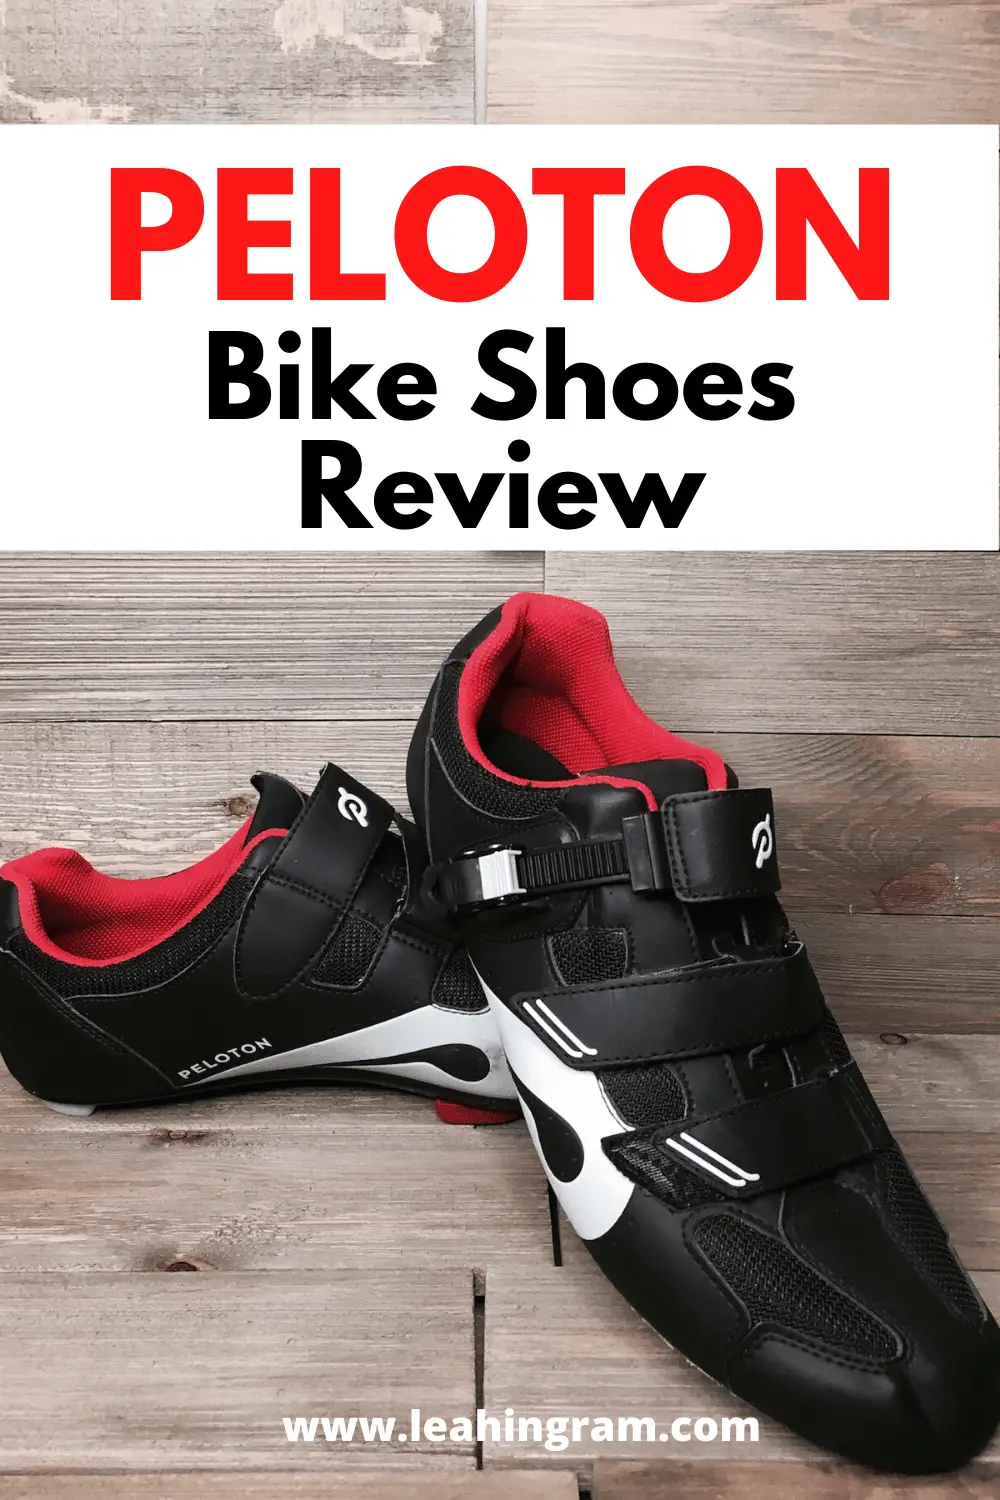 Peloton Bike Shoes Review